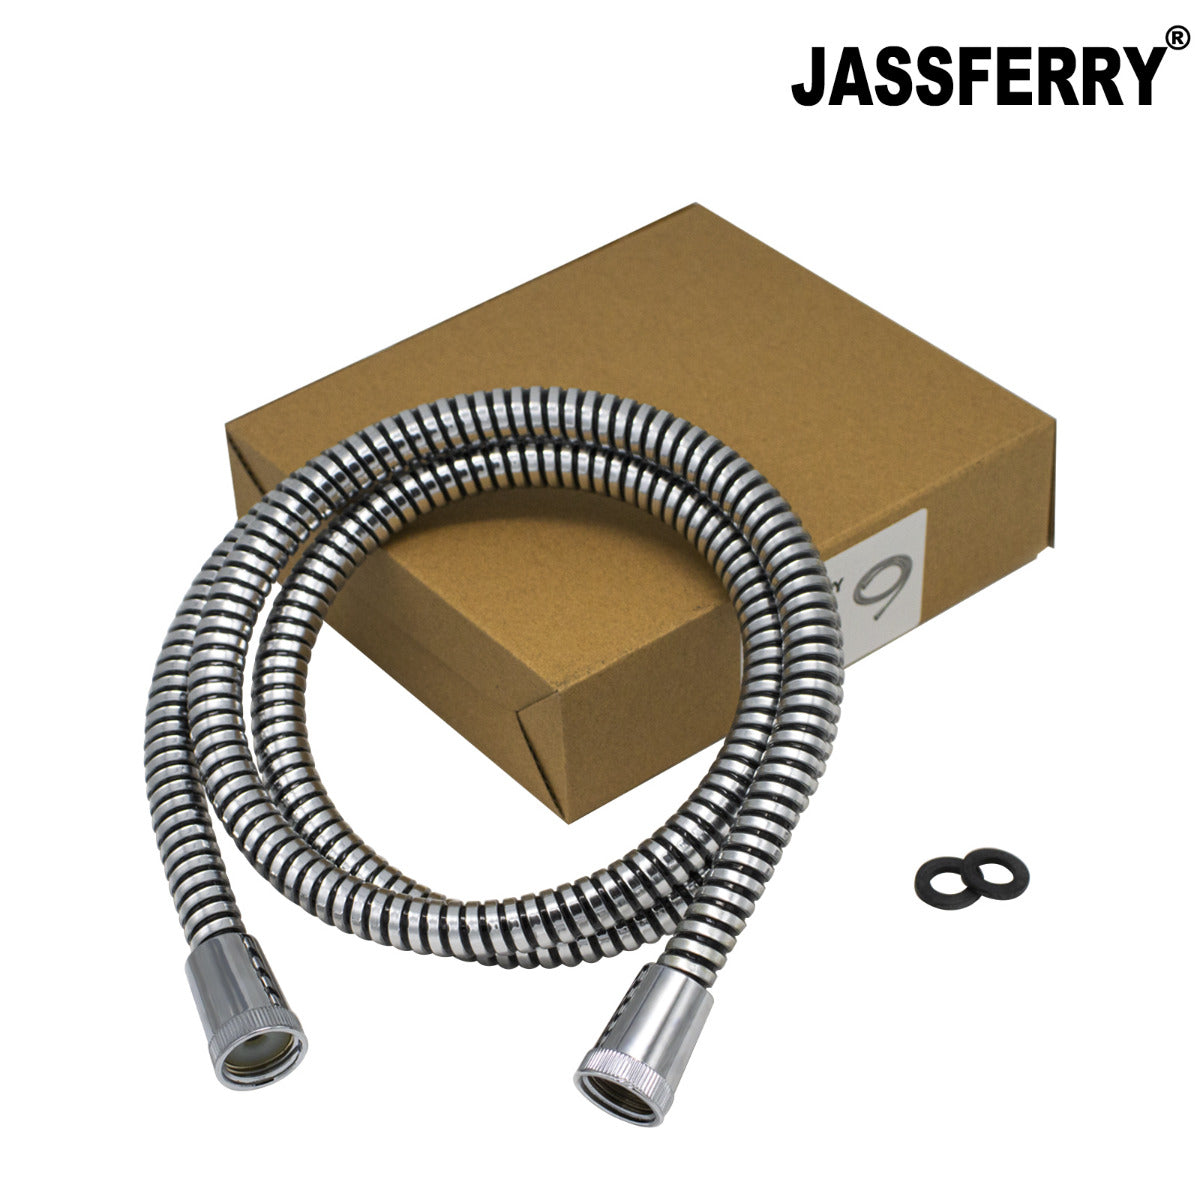 JassferryJASSFERRY New 1.5M(59-Inch) Shower Hose Reinforced Mylar PVC ReplacementShower Heads